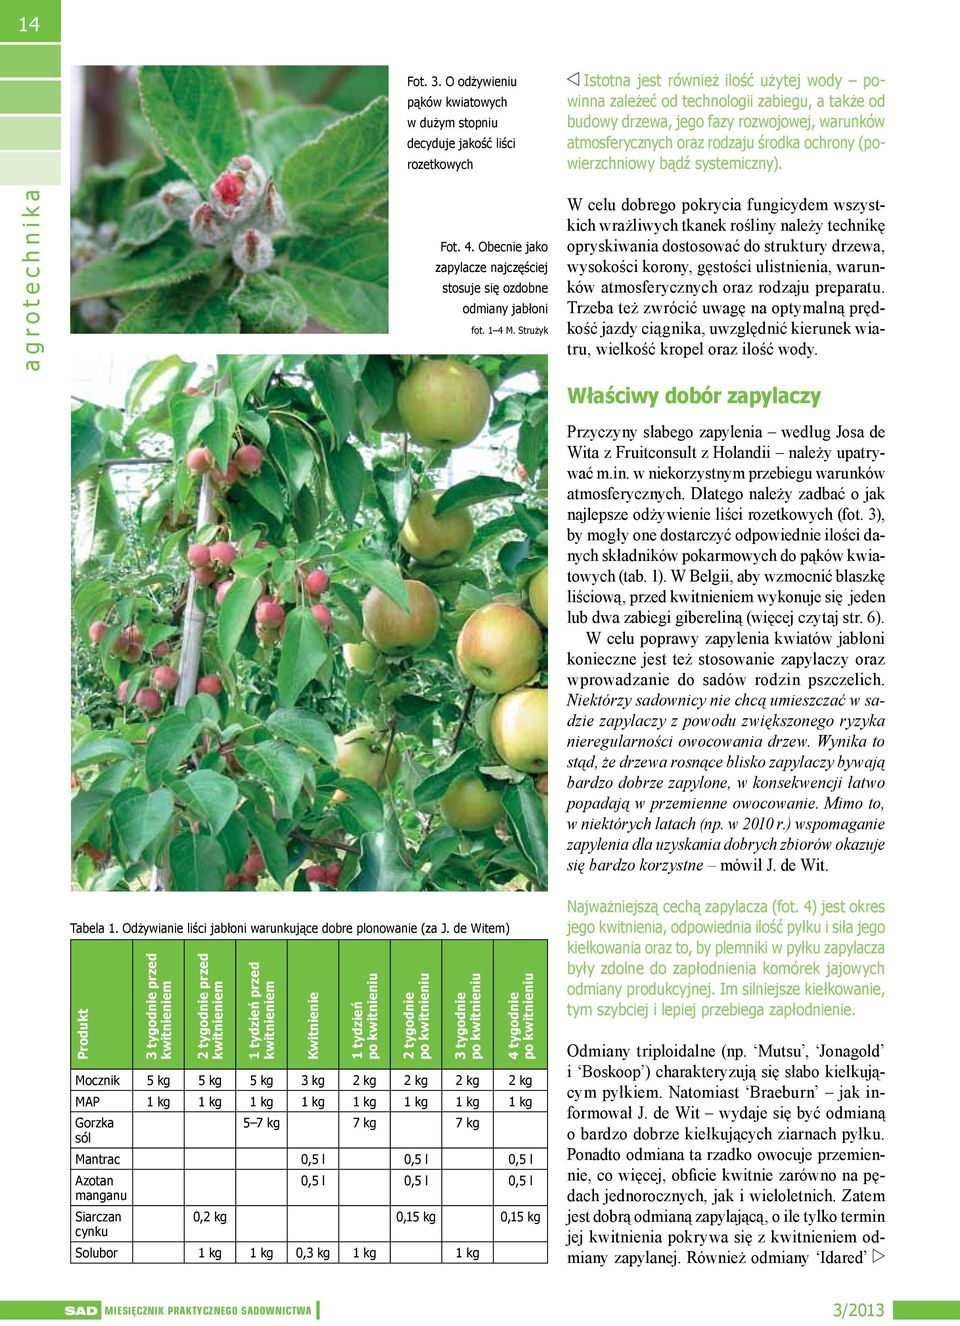 Obecnie jako zapylacze najczęściej stosuje się ozdobne odmiany jabłoni 3 tygodnie fot. 1 4 M.